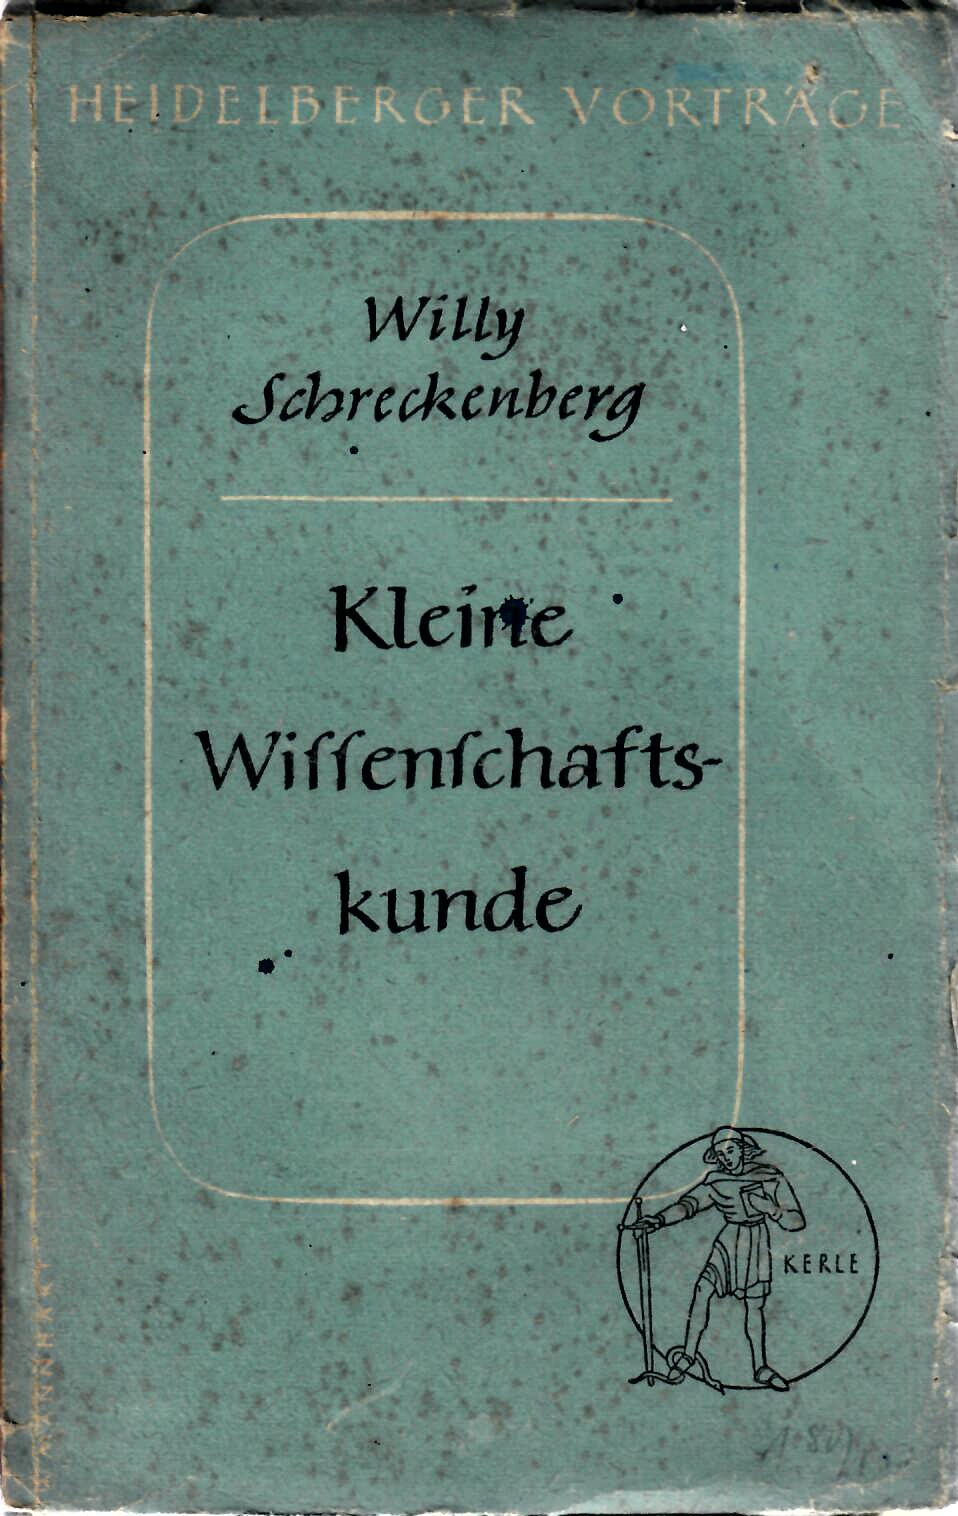 Schreckenberg, Willy   : Heidelberger Vortrge Band 4 : Kleine Wissenschaftskunde : F.H. Kerle Verlag, Heidelberg, 1948 erste Auflage :